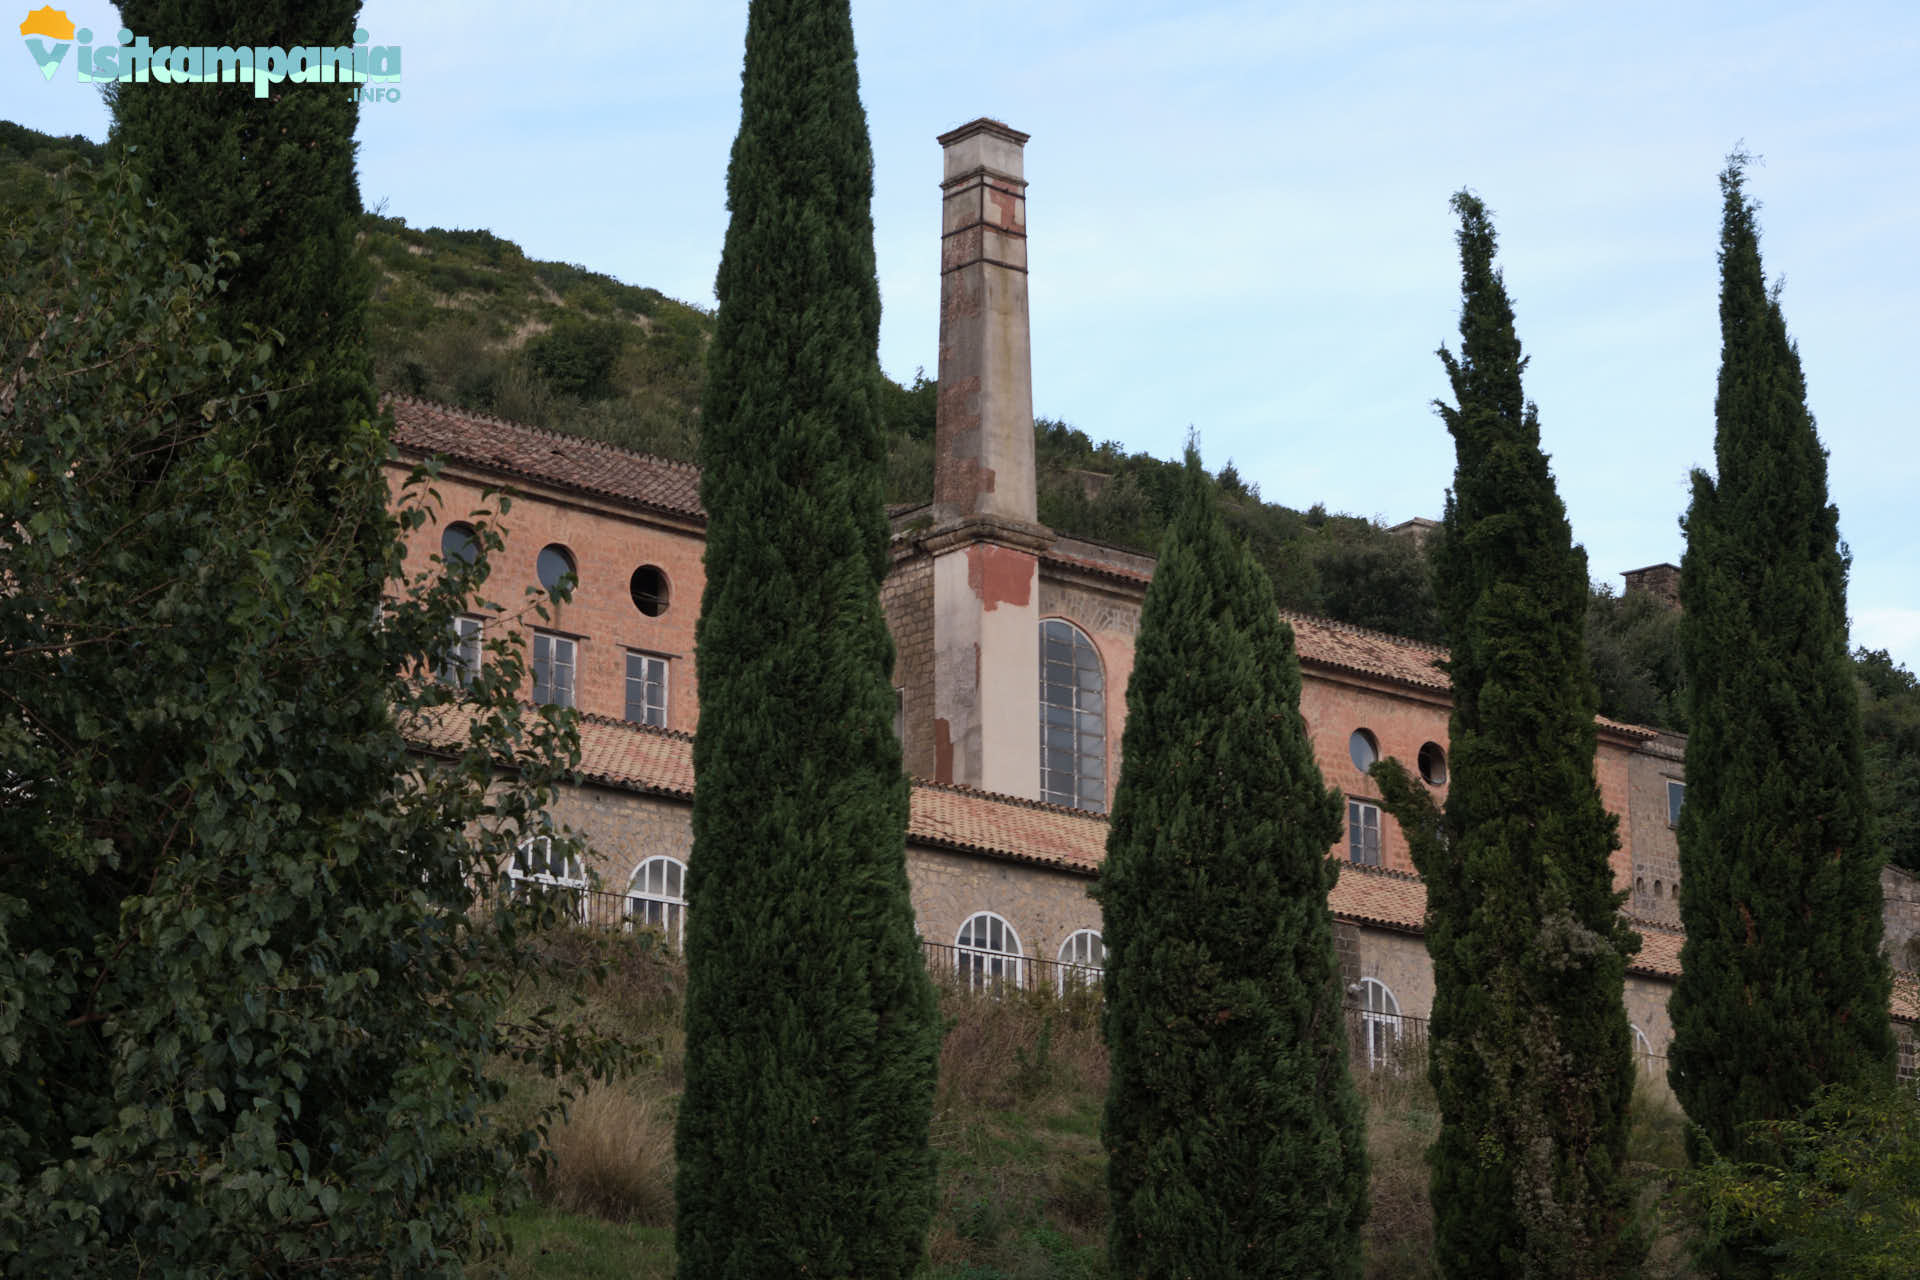 Real Belvedere di San Leucio, la filature et la coculliera